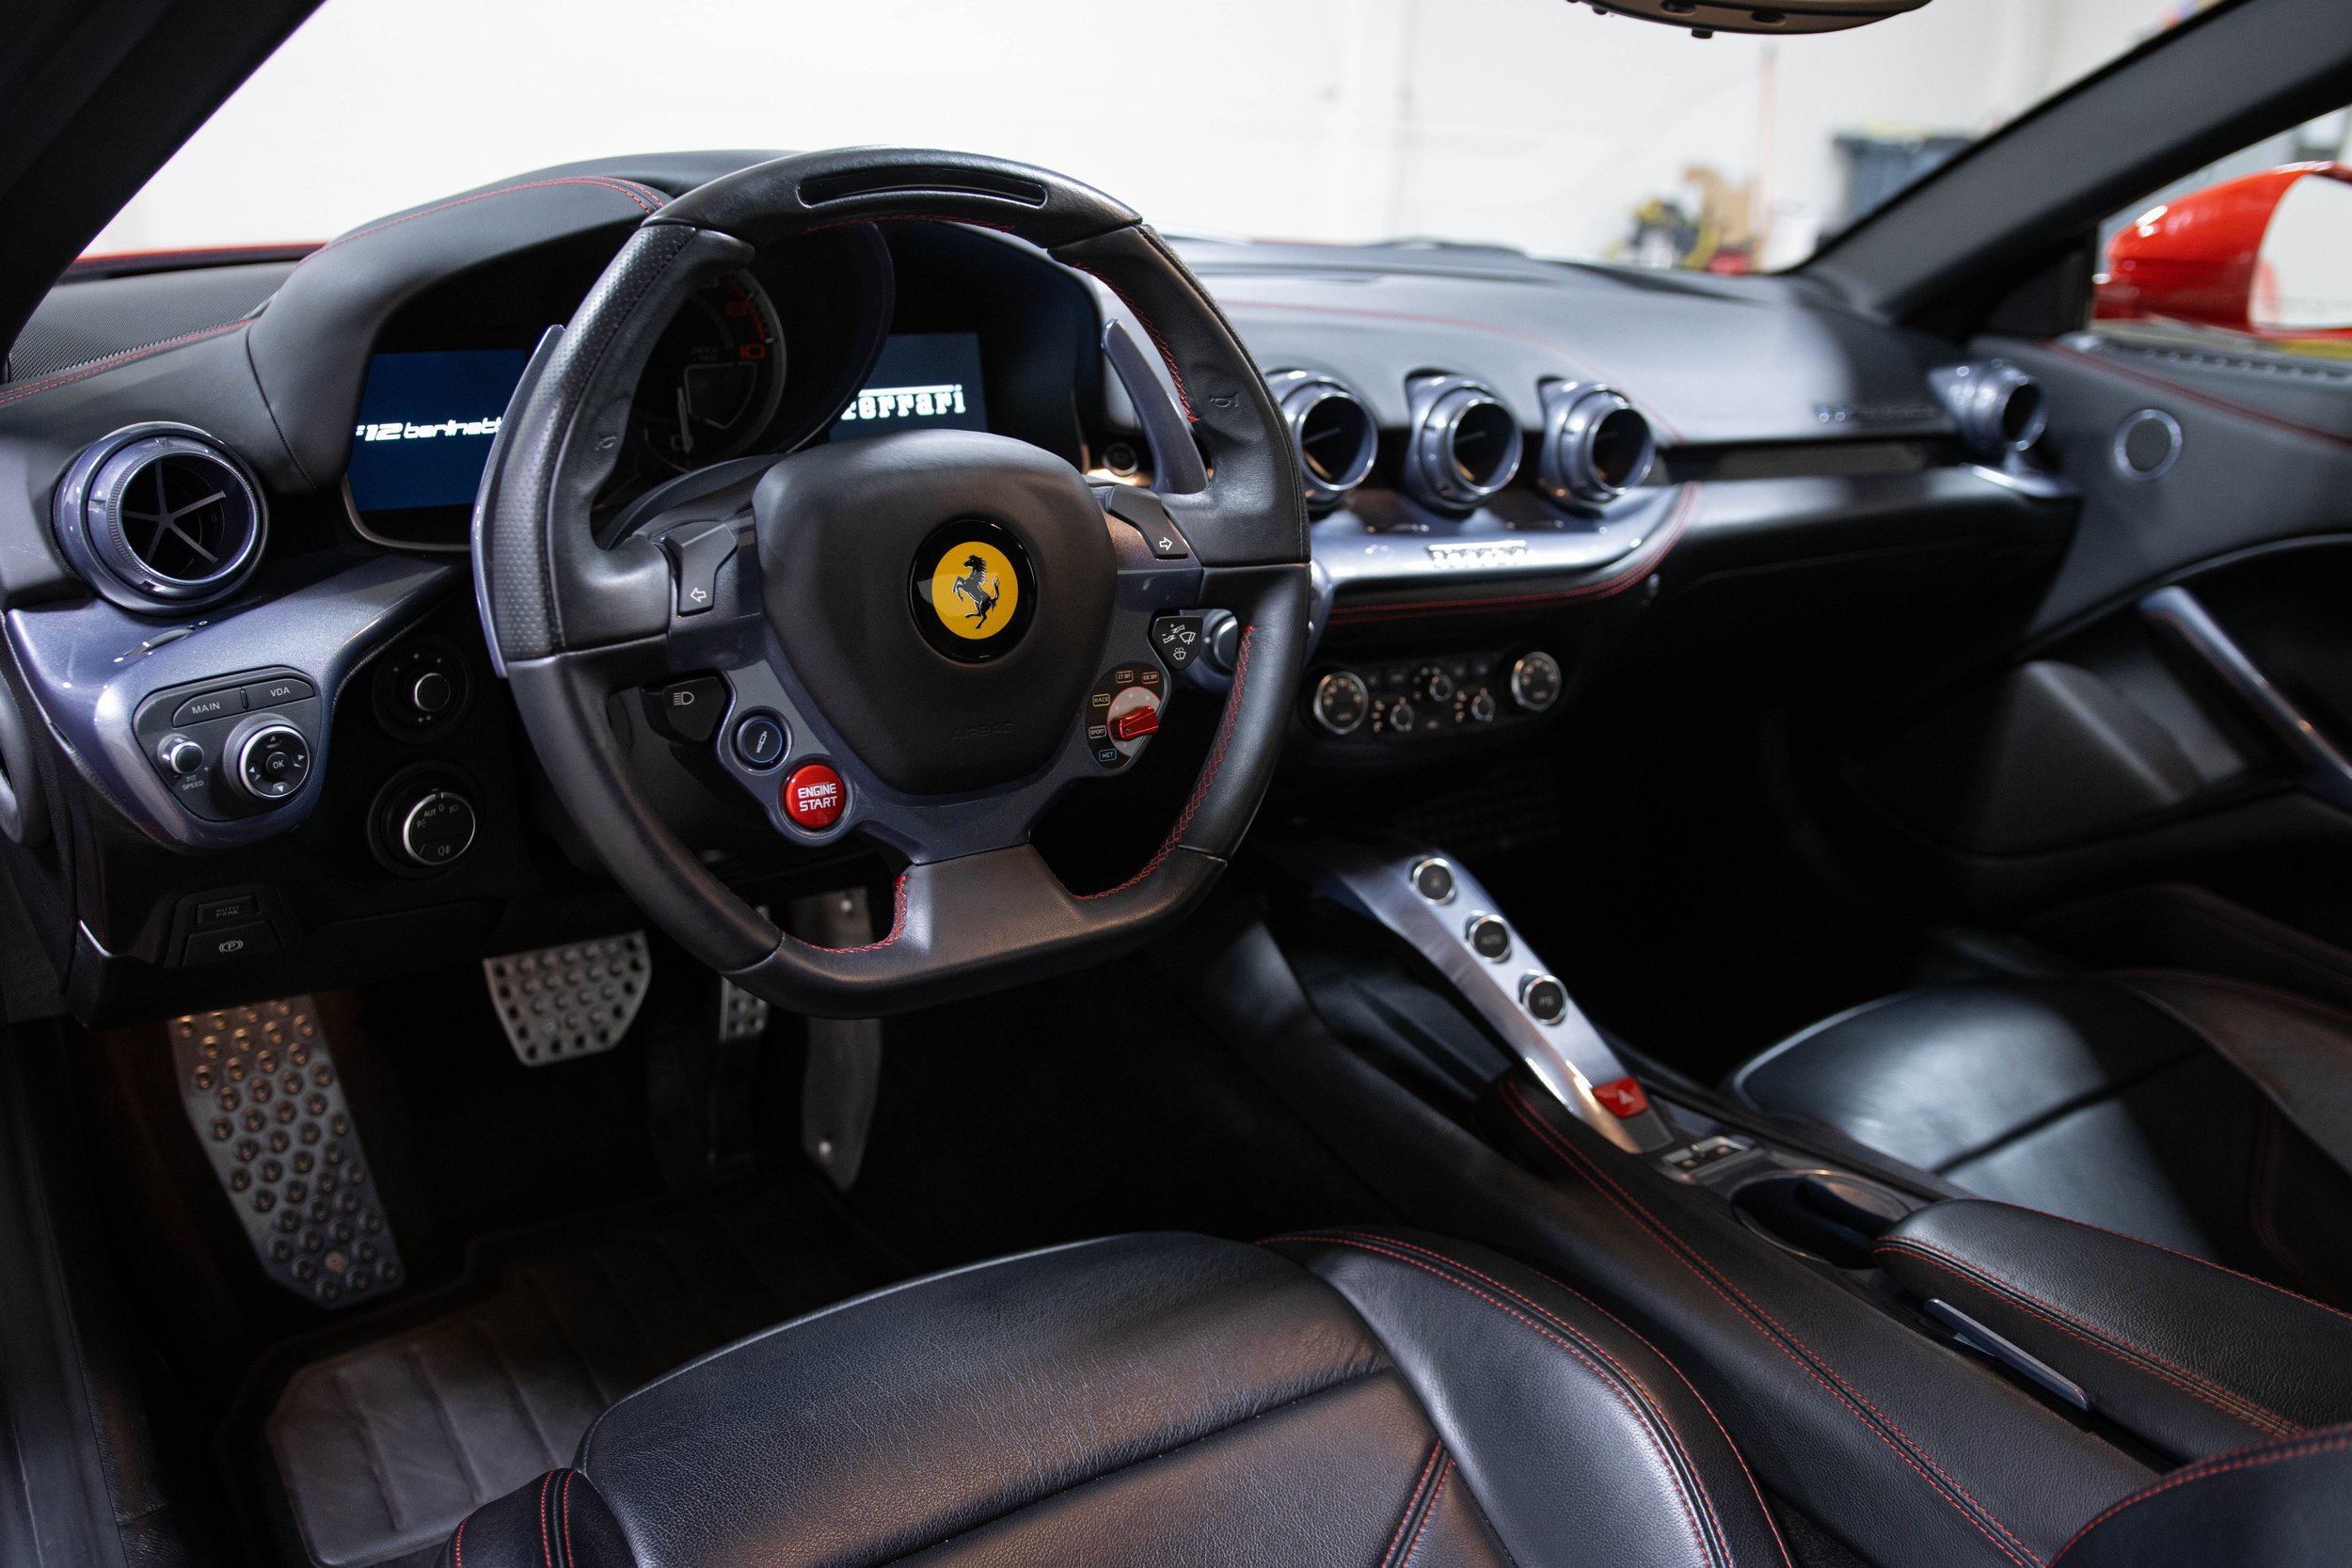 2014 Ferrari F12 Berlinetta - Rosso Corsa - Walkaround & Interior